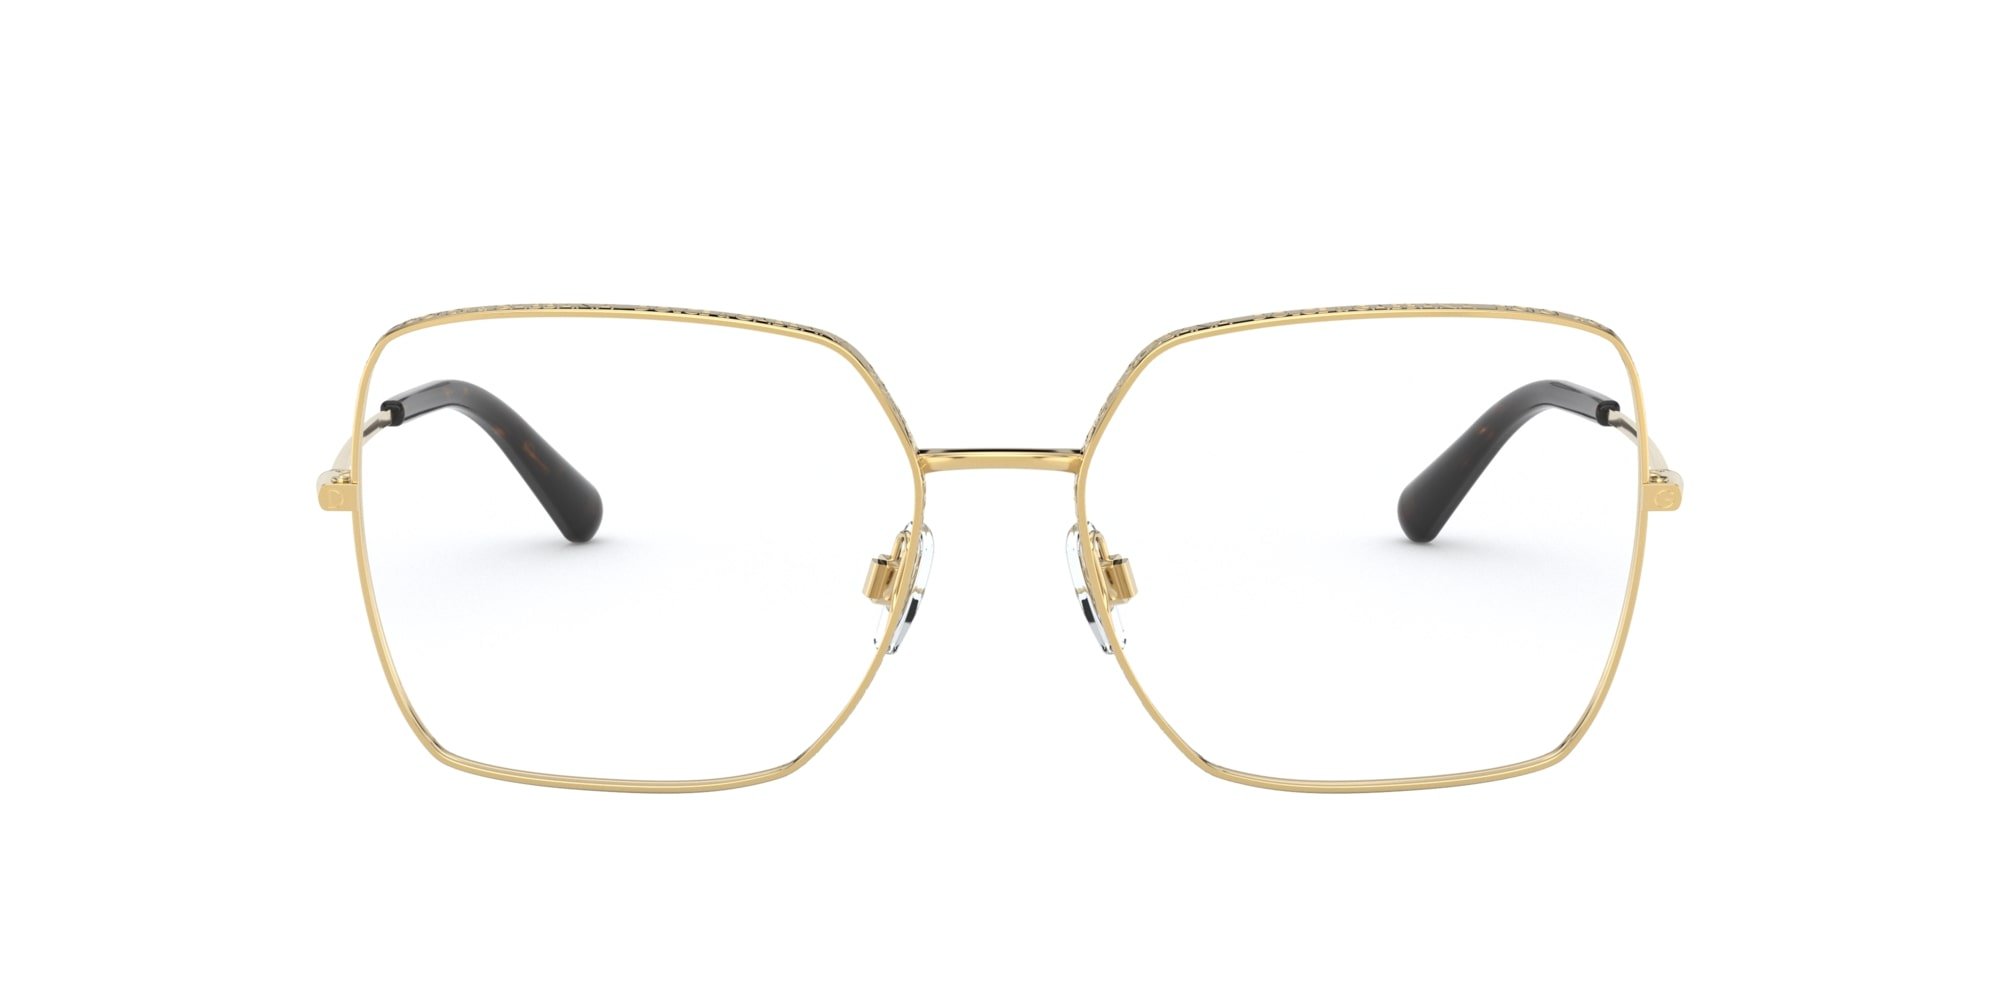 Das Bild zeigt die Korrektionsbrille DG1323 02 von der Marke D&G in gold.